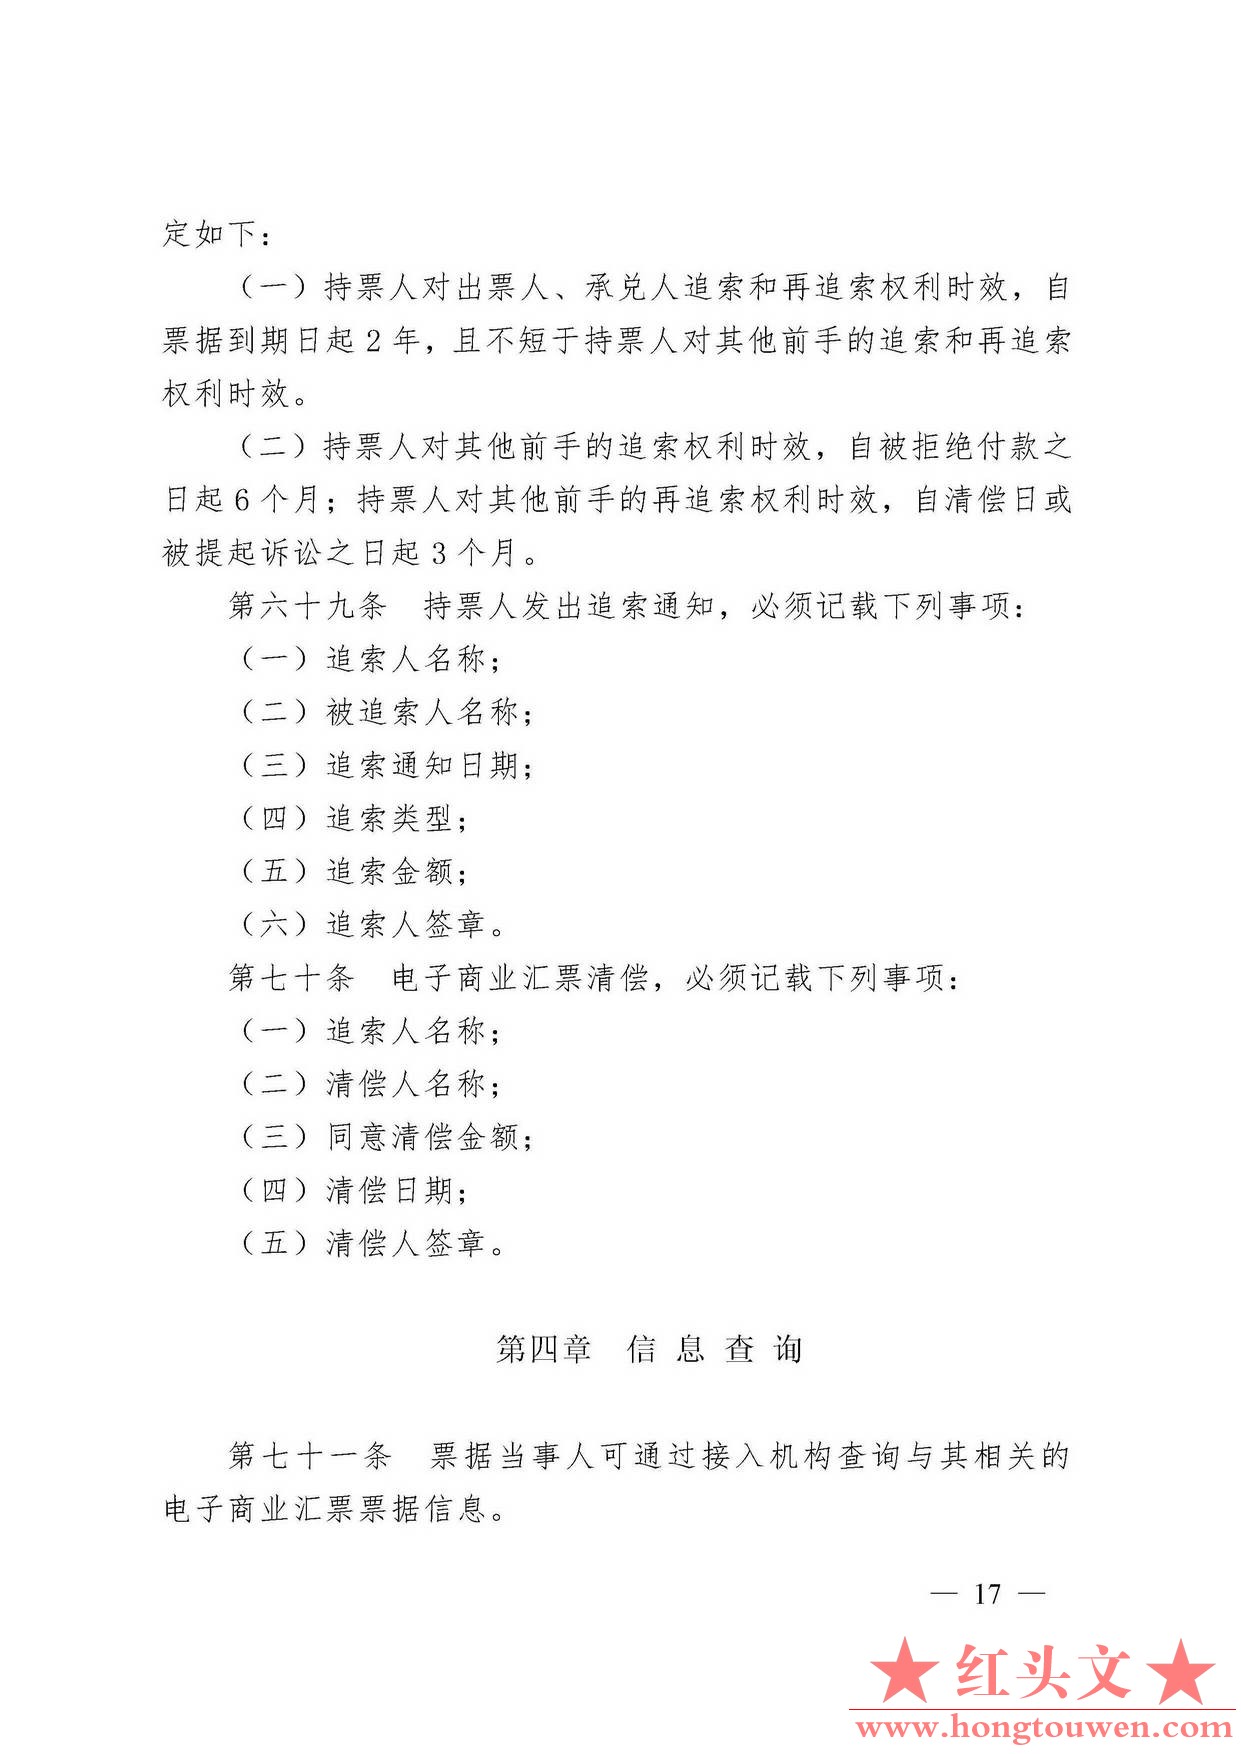 中国人民银行令[2009]2号-电子商业汇票管理办法_页面_17.jpg